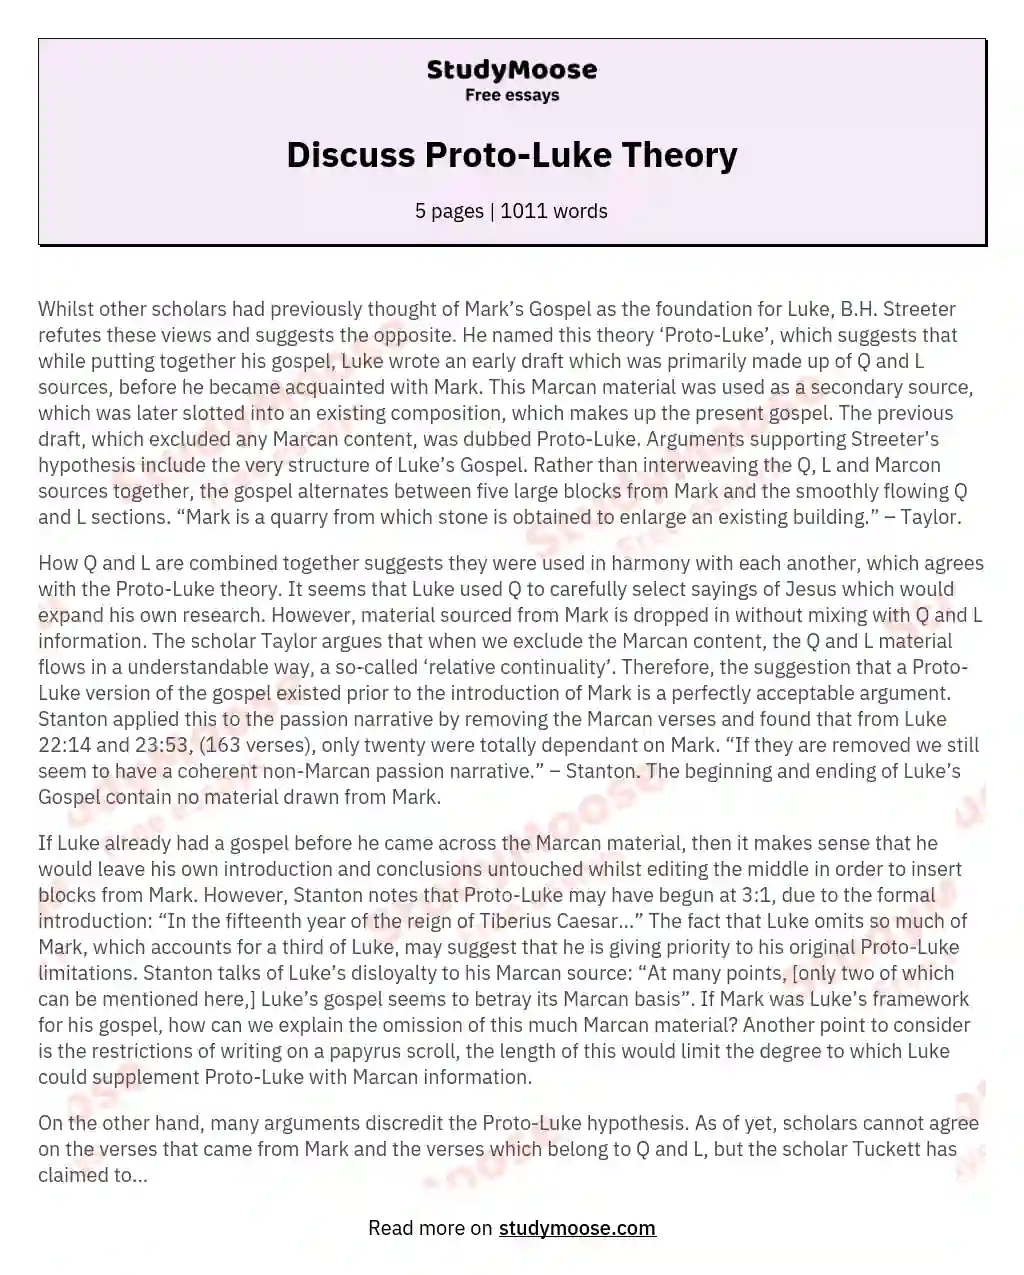 Discuss Proto-Luke Theory